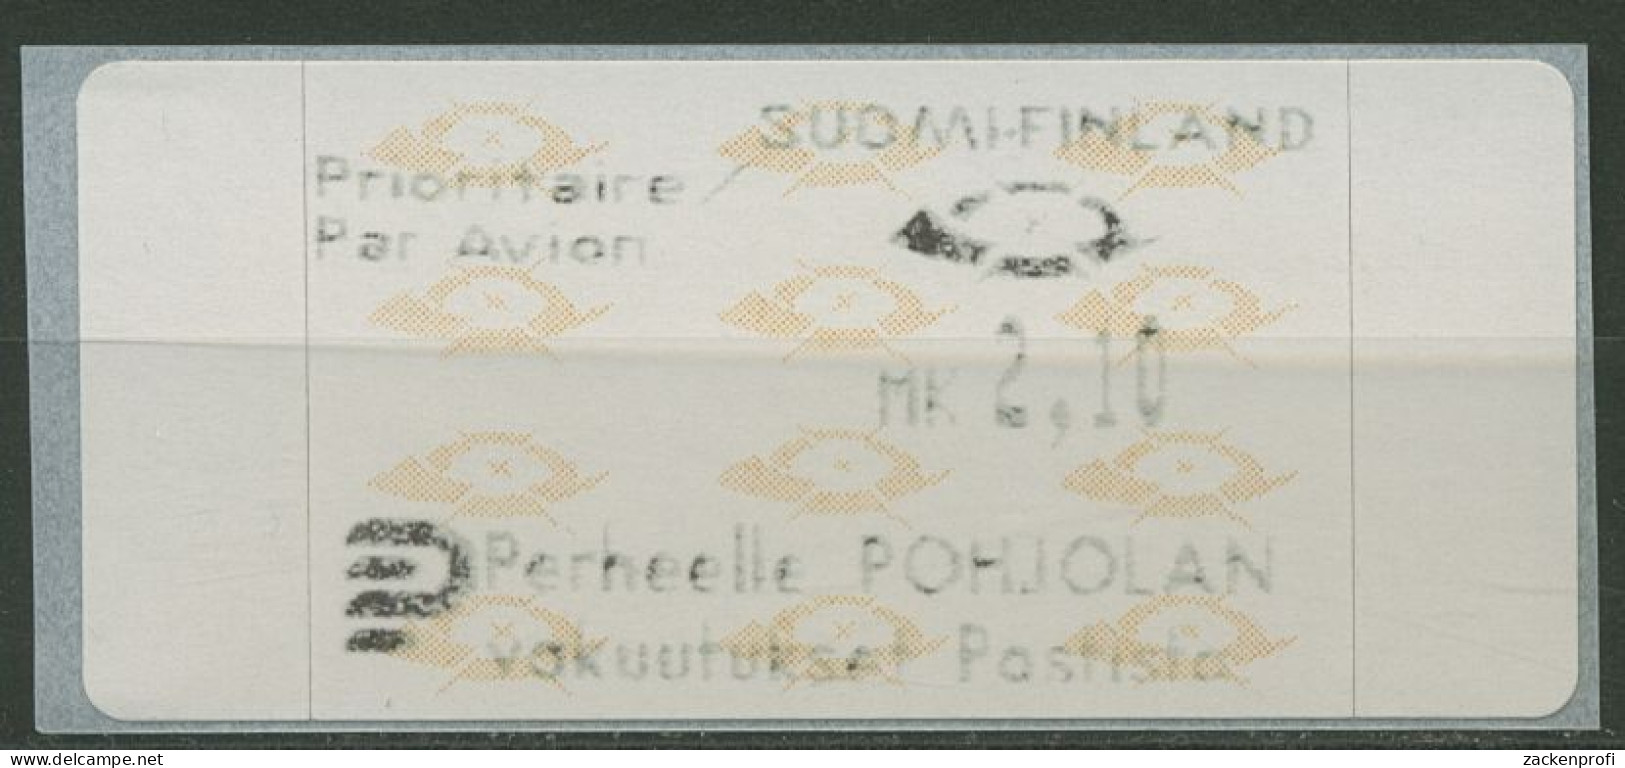 Finnland Automatenmarken 1992 Posthörner Einzelwert ATM 12.3 Z6 Postfrisch - Vignette [ATM]